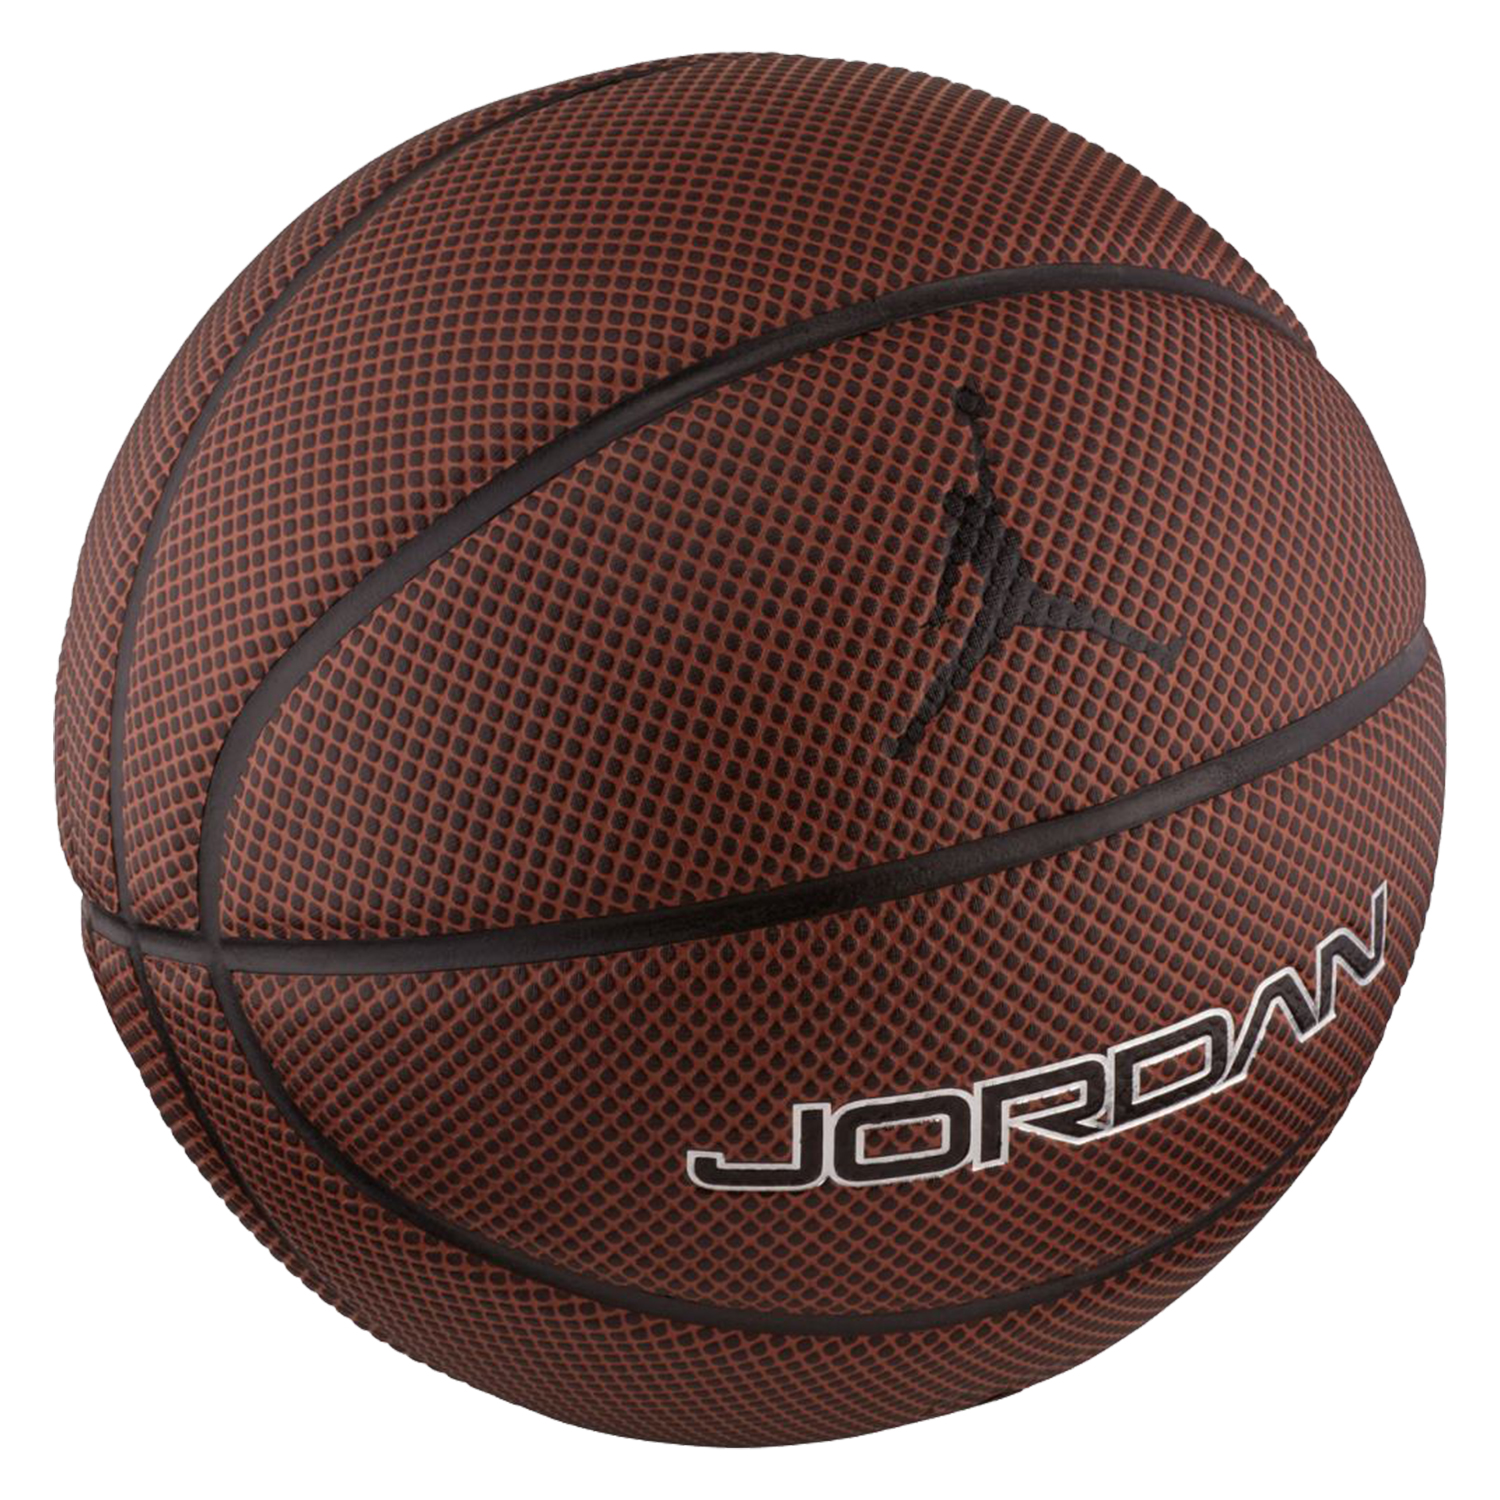 Баскетбольные мячи для детей. Баскетбольный мяч Nike Hyper Elite. Баскетбольные мячи Jordan Hyper Elite.